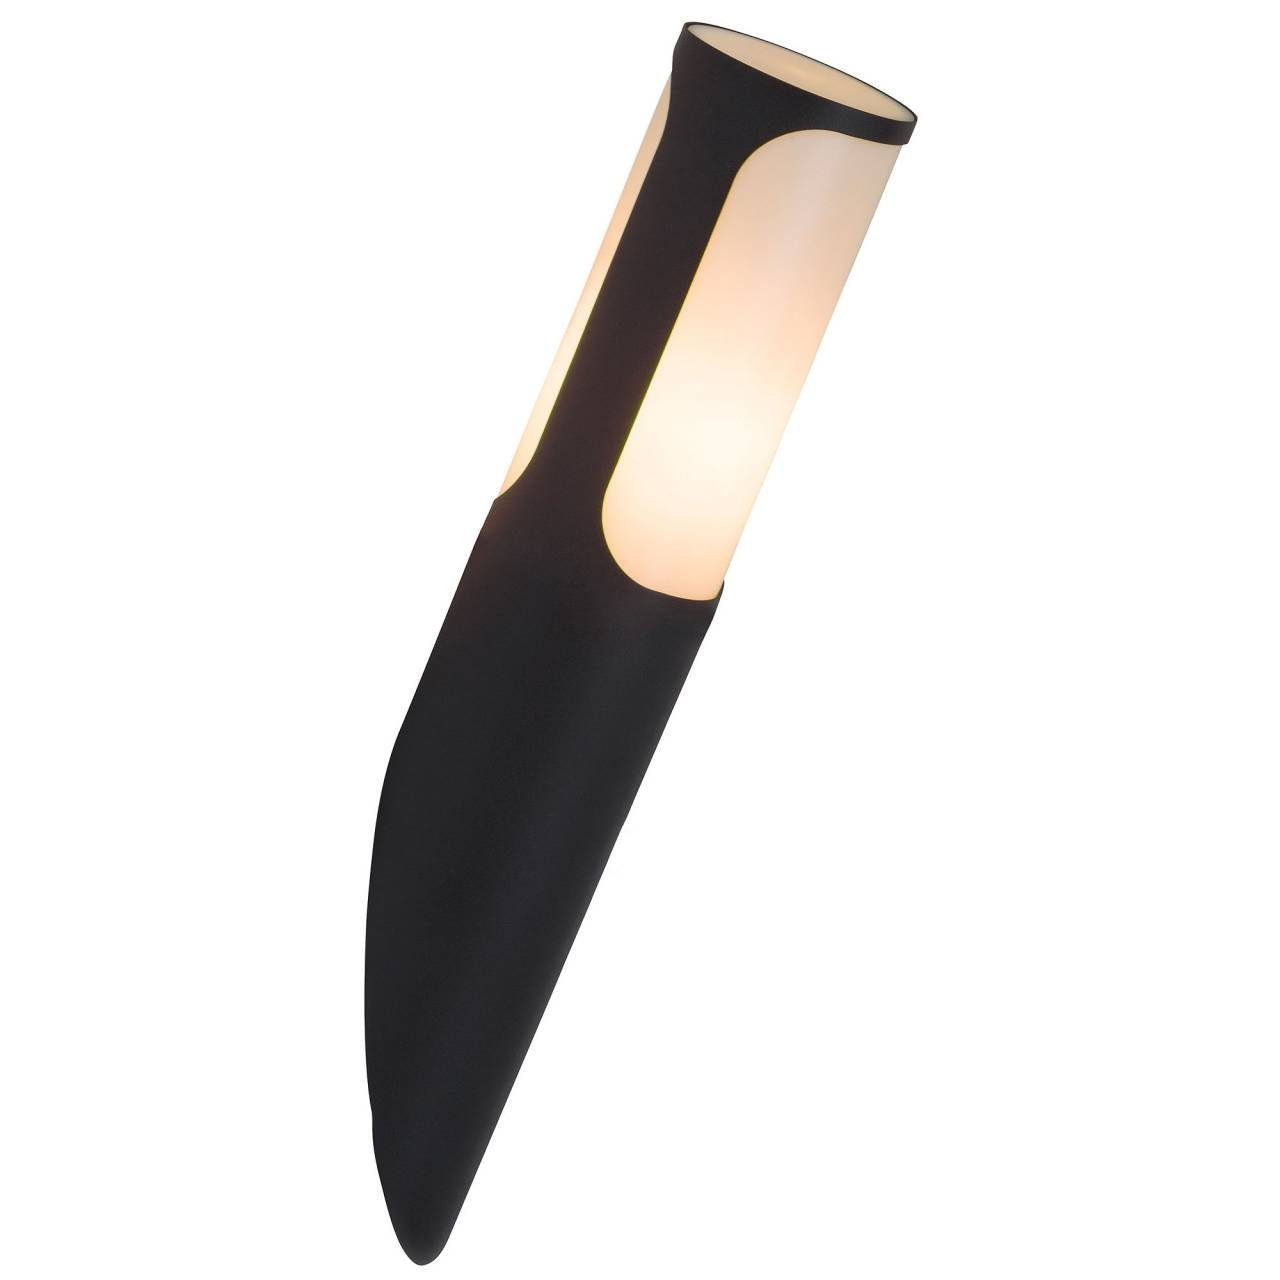 anthrazit Außenwandfackel Lampe Gap, Brilliant 20W, Gap N A60, 1x LED E27, Außen-Wandleuchte geeignet für